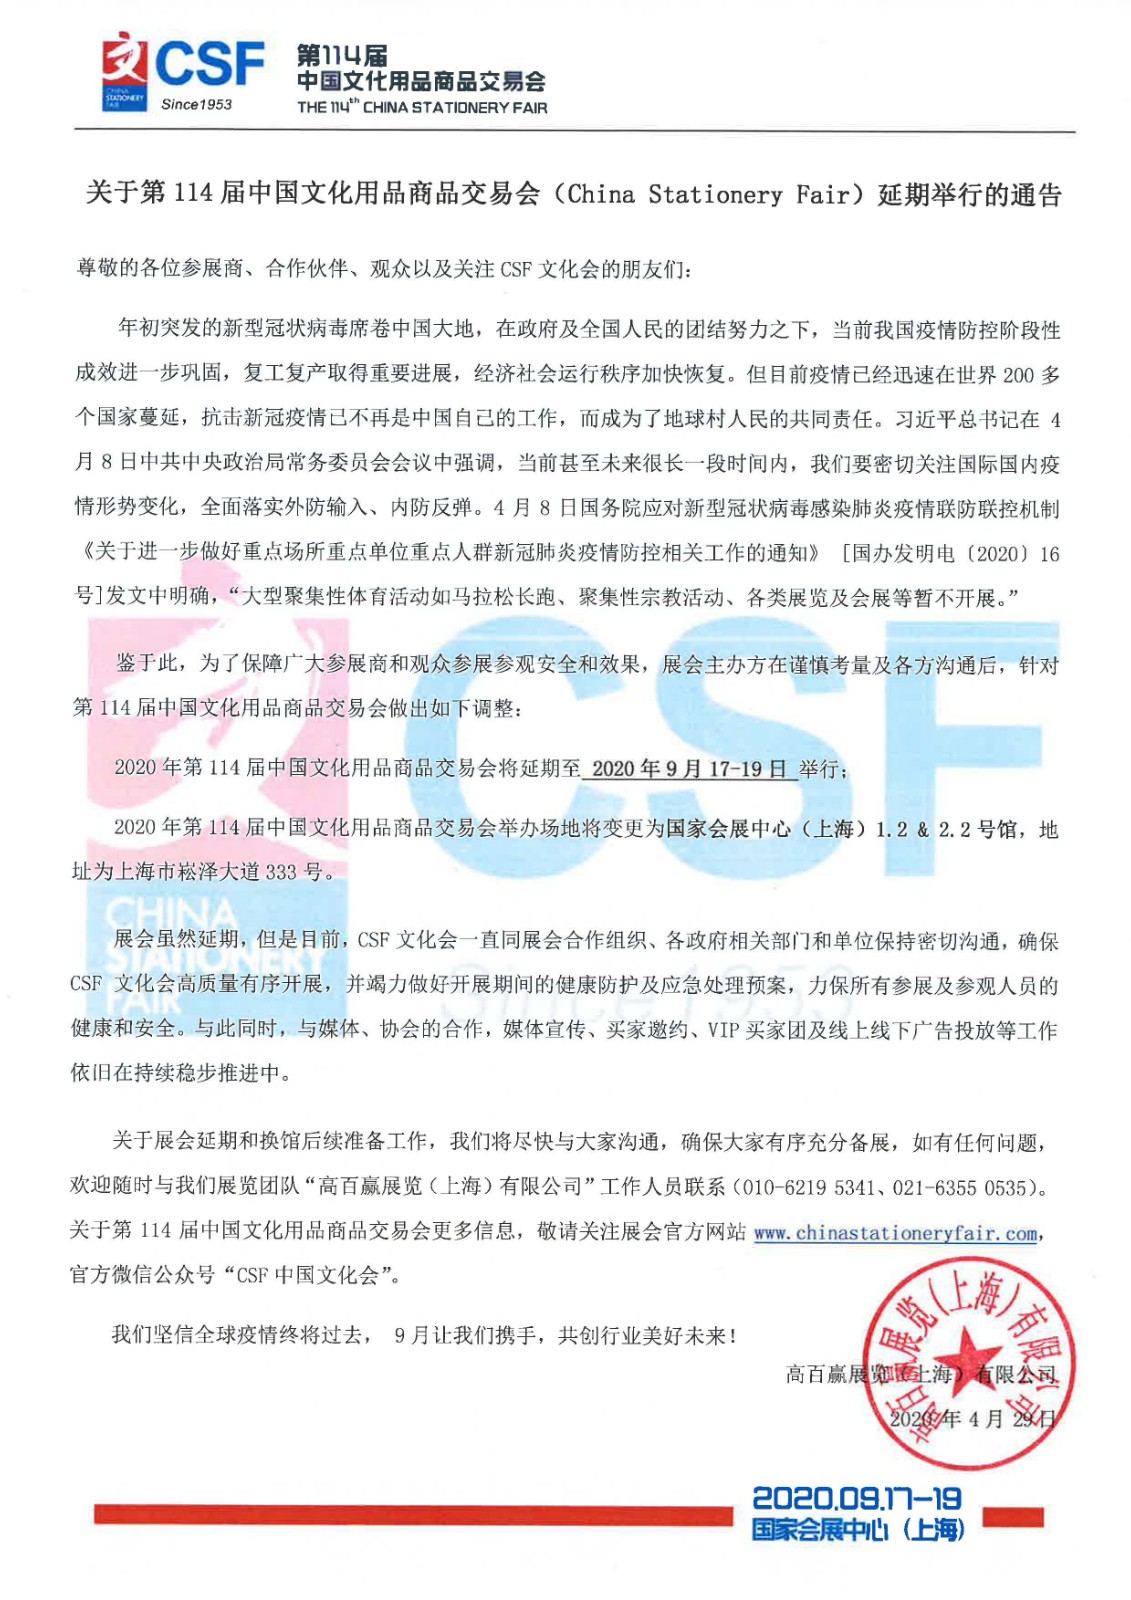 盖章文件-关于第114届中国文化用品商品交易会延期通告.jpg